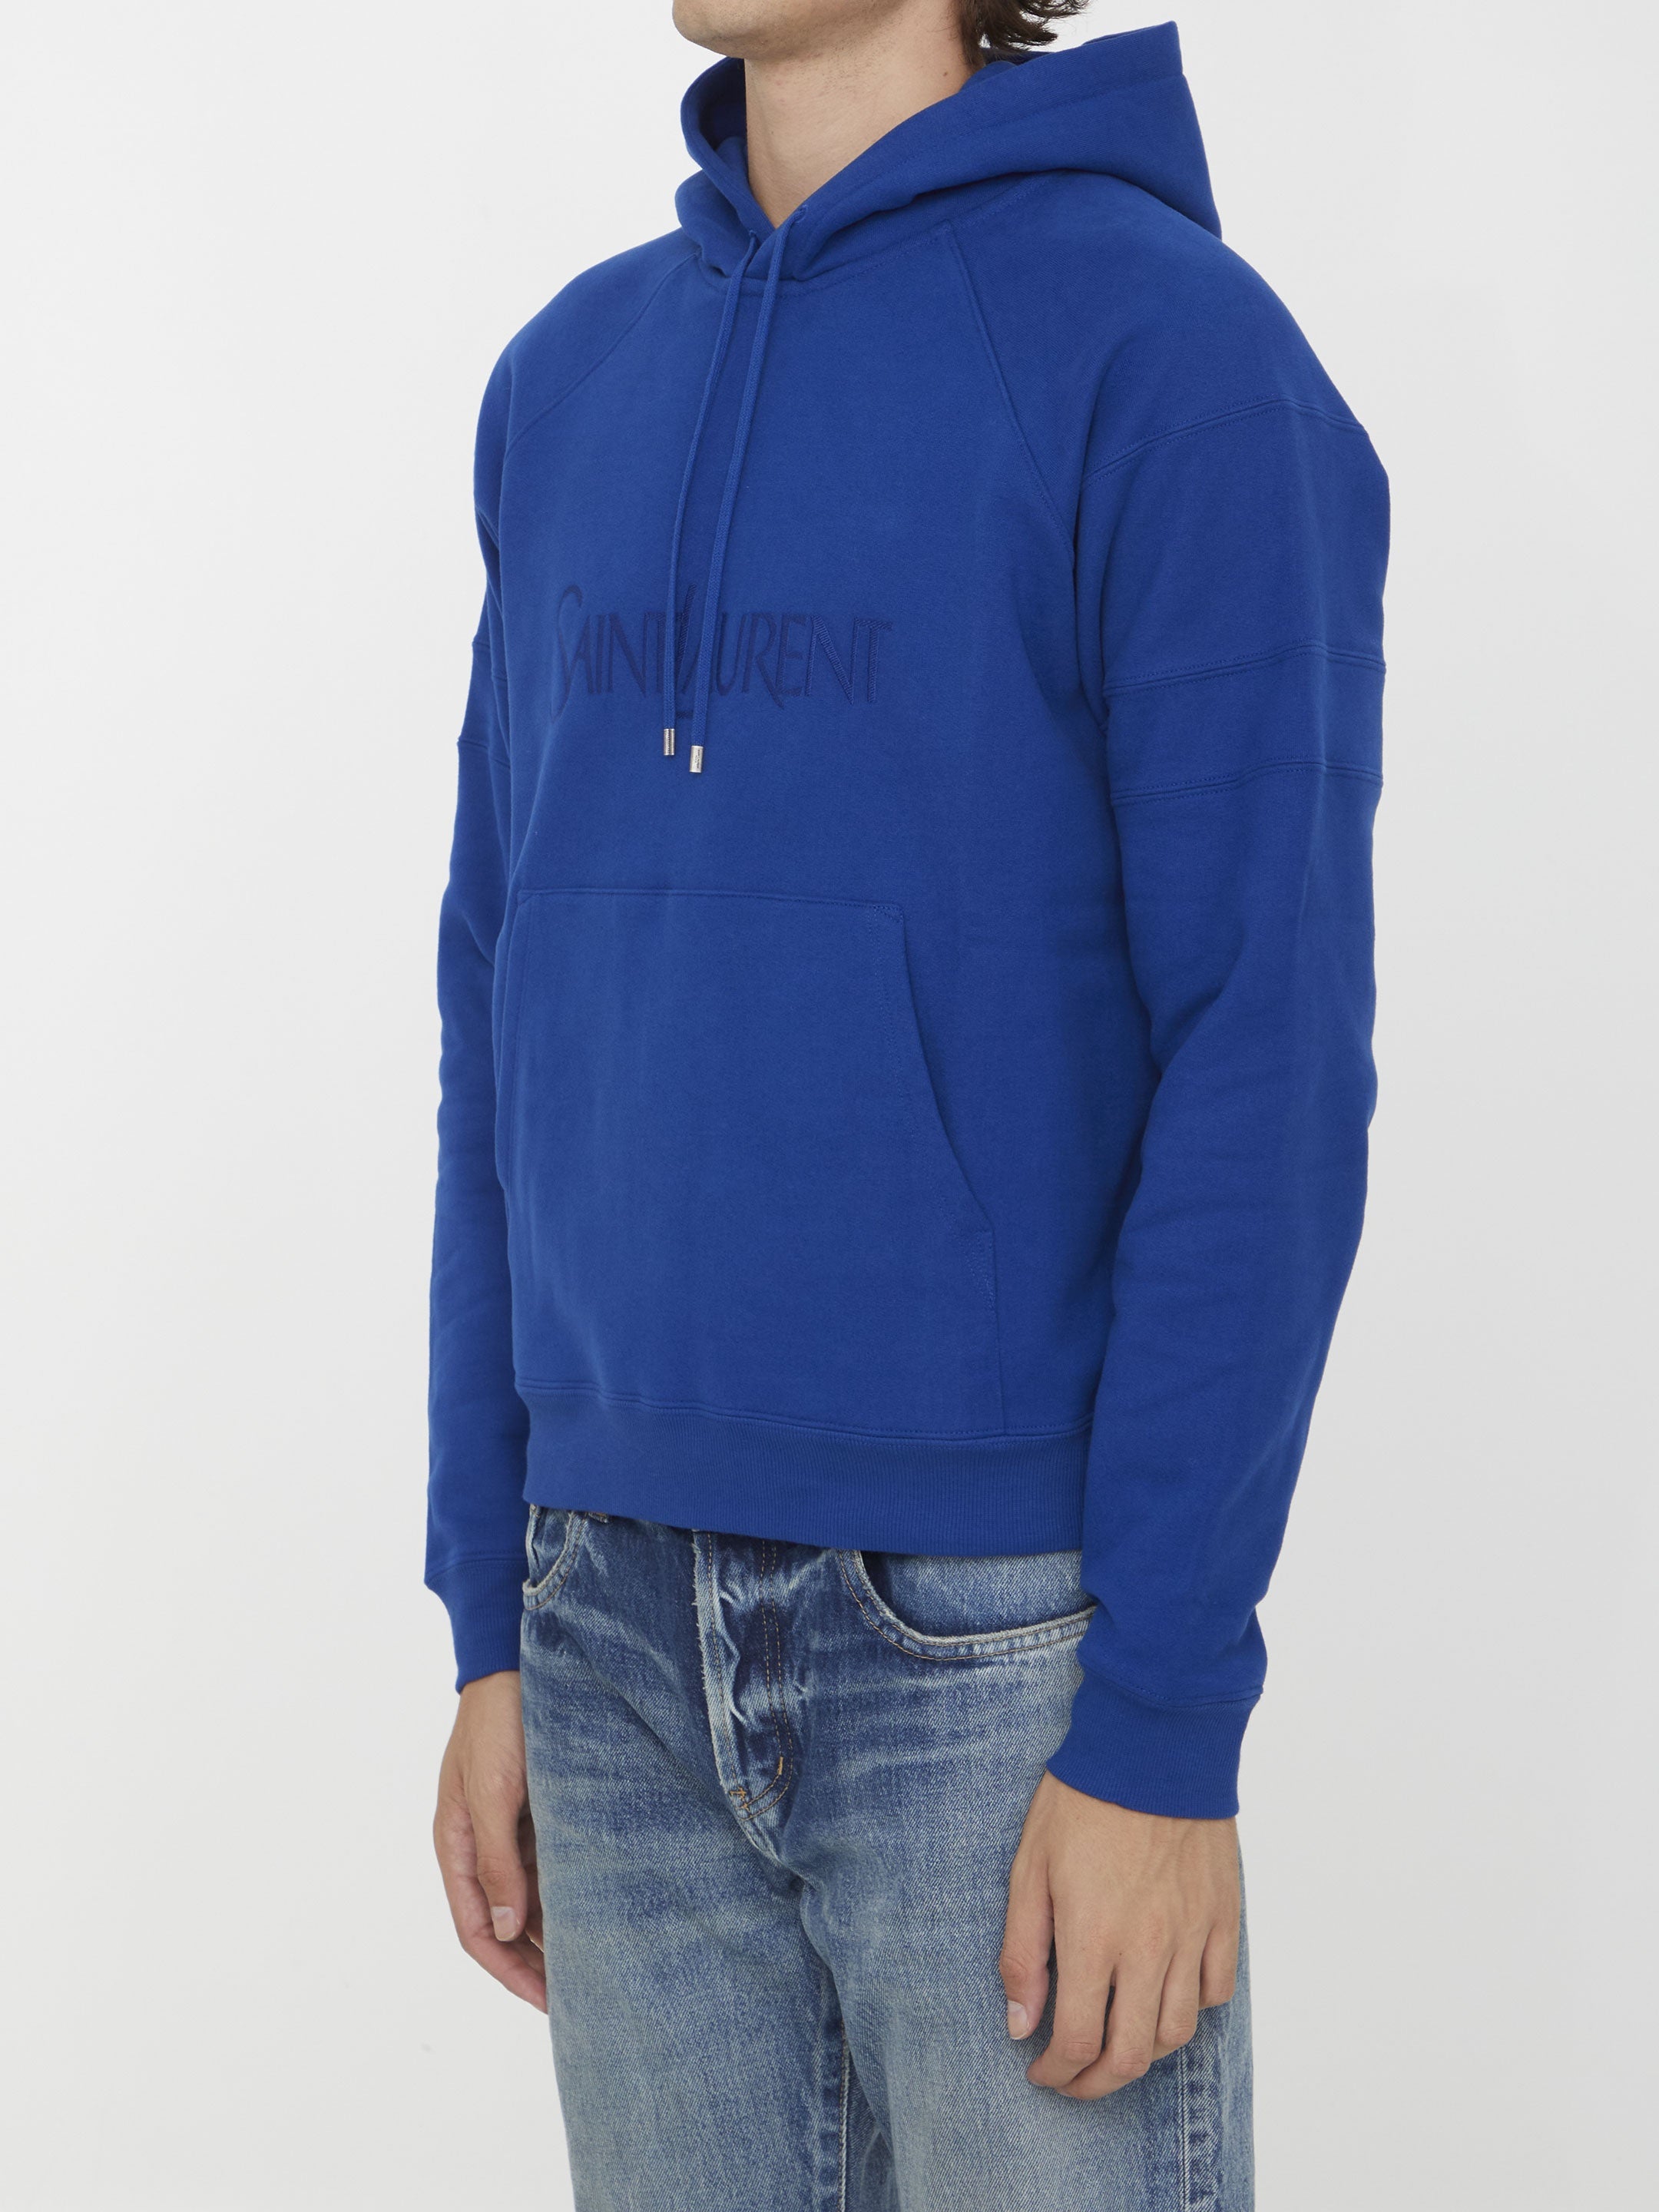 Saint Laurent hoodie